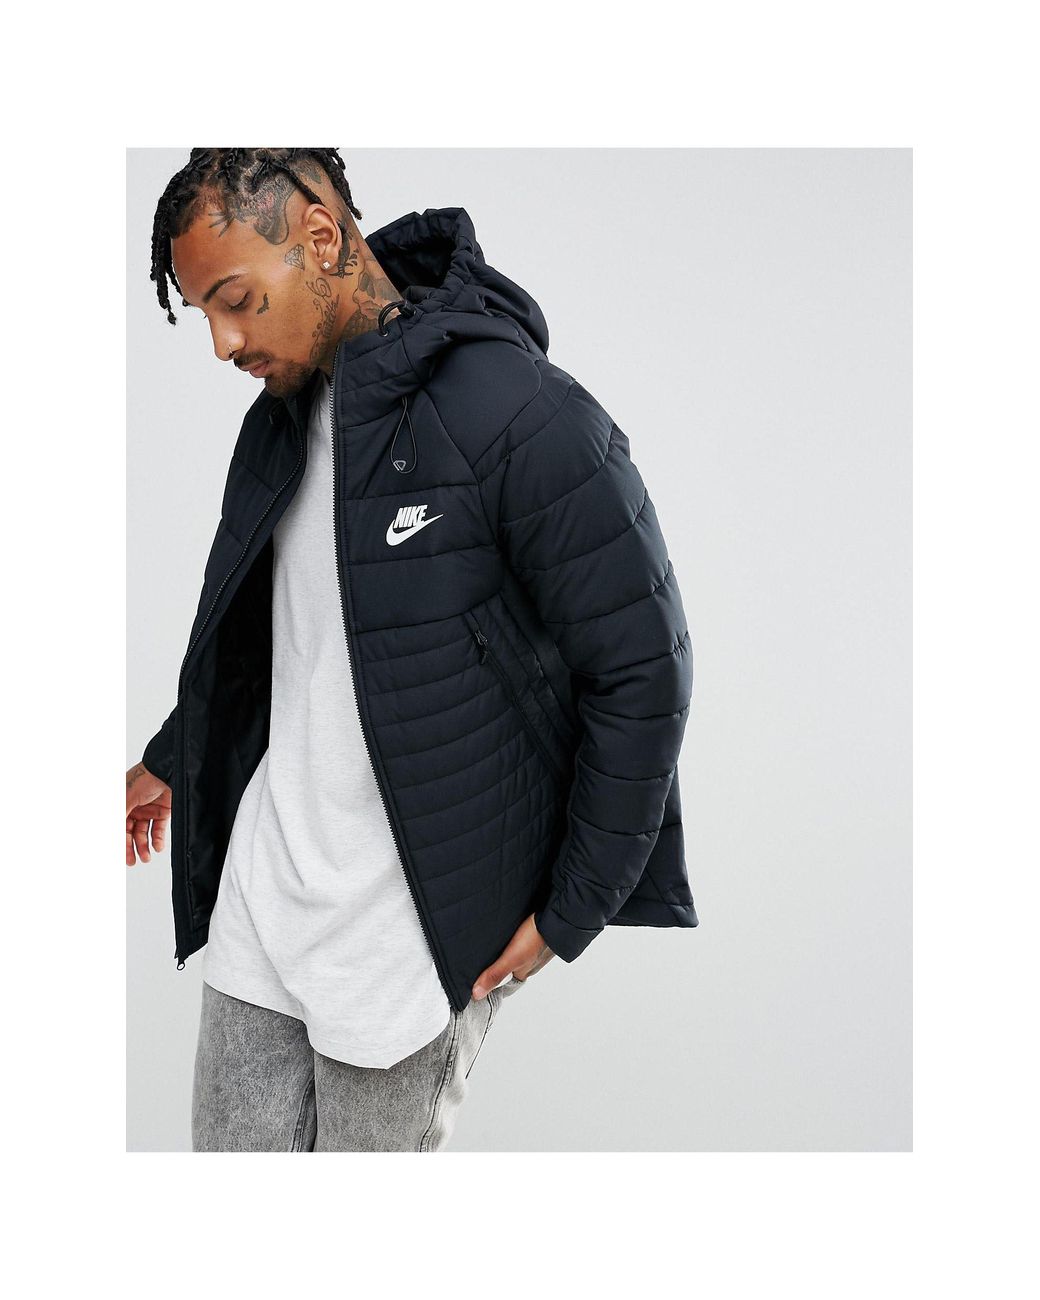 Nike Av15 Padded Jacket With Hood in Black for Men | Lyst UK